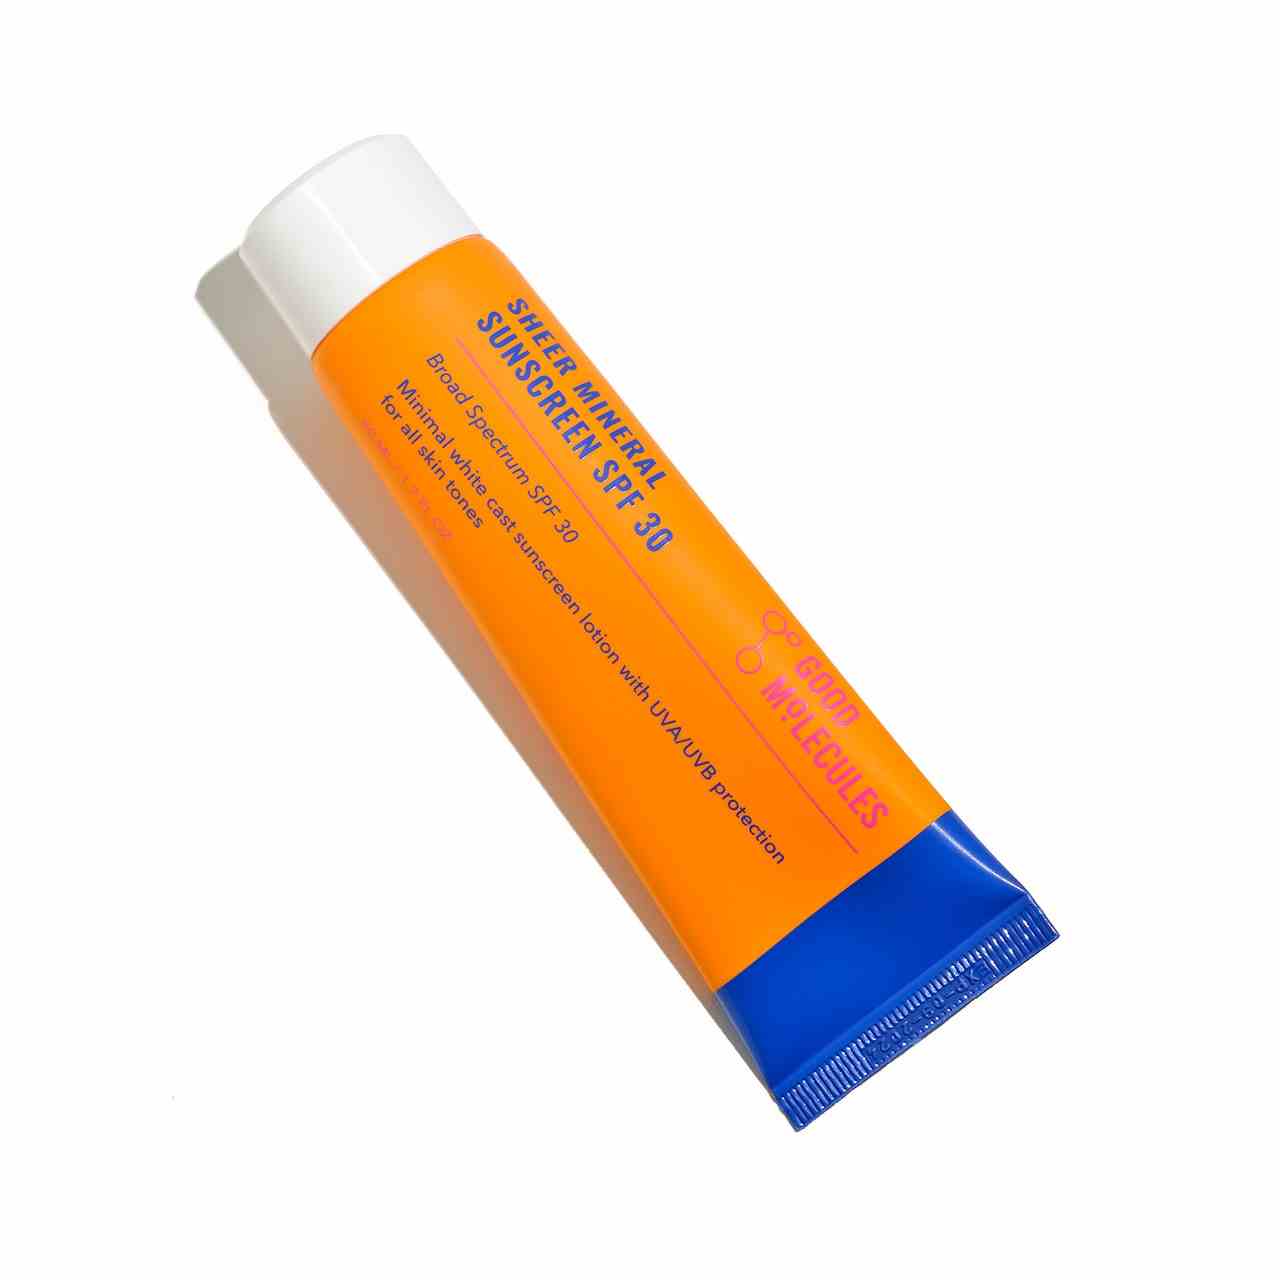 Gute Moleküle Sheer Mineral Sunscreen SPF 30 orange Tube auf weißem Hintergrund